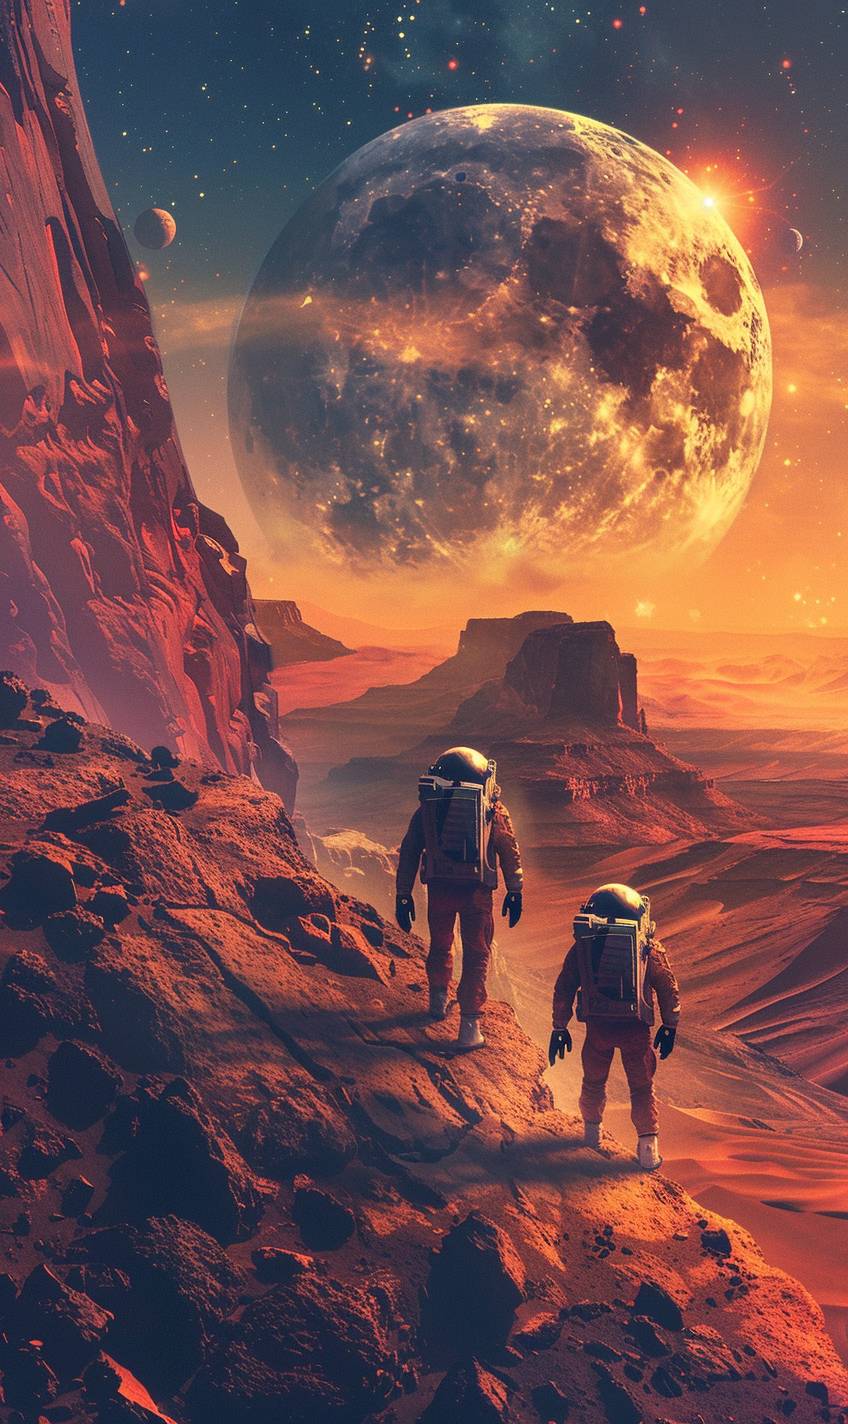 火星の宇宙飛行士、赤いエイリアンの風景、巨大な夕日、巨大な惑星の空、急な岩の形態、反射するバイザー、宇宙探査、高コントラスト、デジタルアート、鮮やかな色彩、長い影、孤独、静か、超写実的な水彩画、グラフィックノベルスタイル